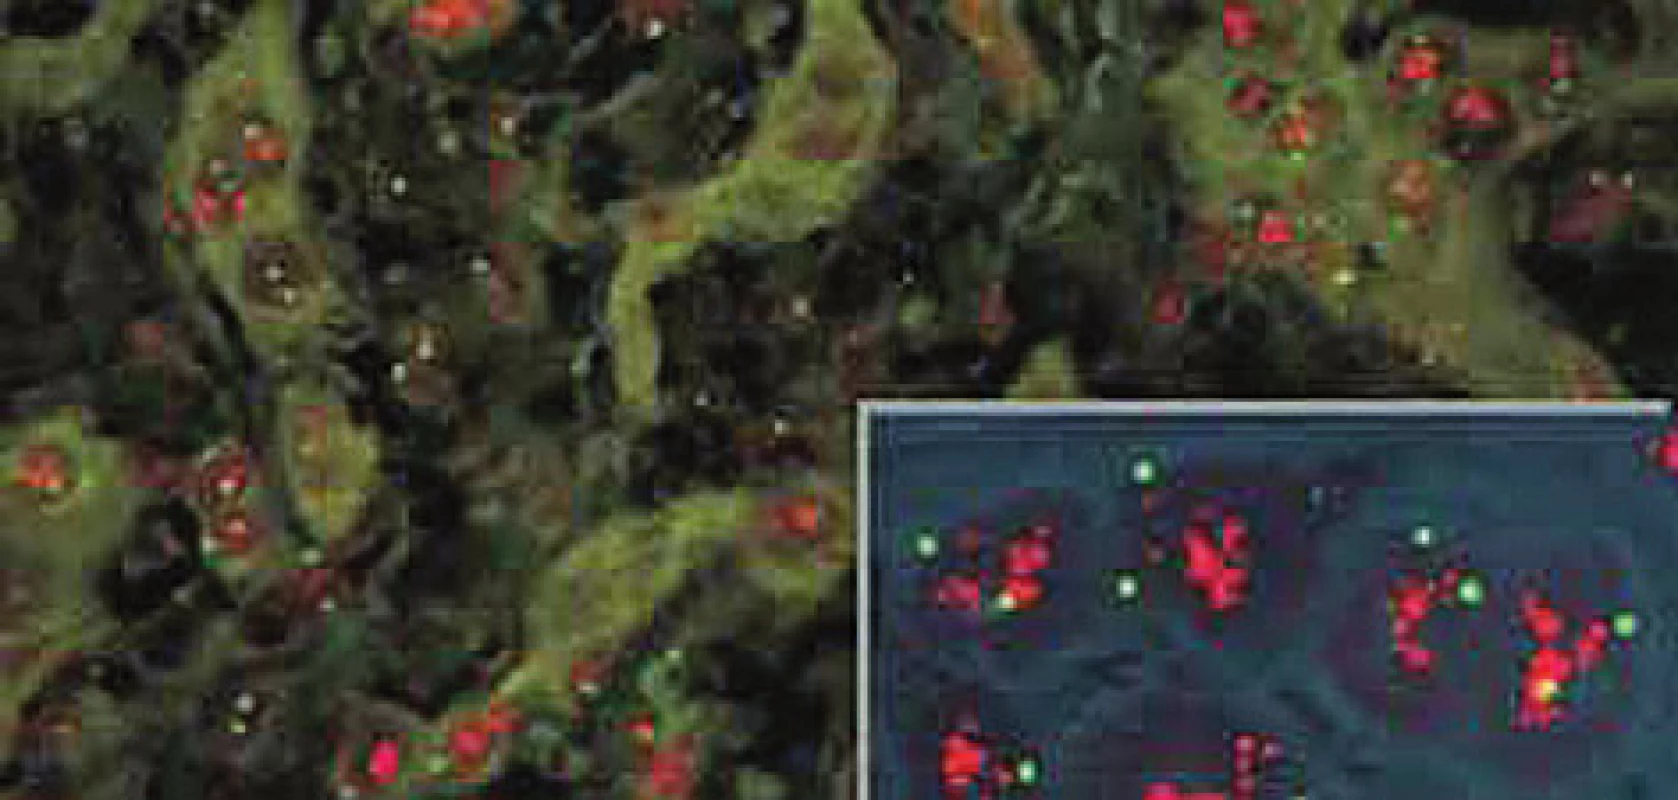 V případech silné amplifikace genu HER2 je počet červených signálů někdy tak vysoký, že dochází k jejich splývání ve formě objemných shluků. Vnitřní kontrolou je normální (tj. 2 kopie) počet zelených centromerických signálů (dle www.patologie.info.cz)